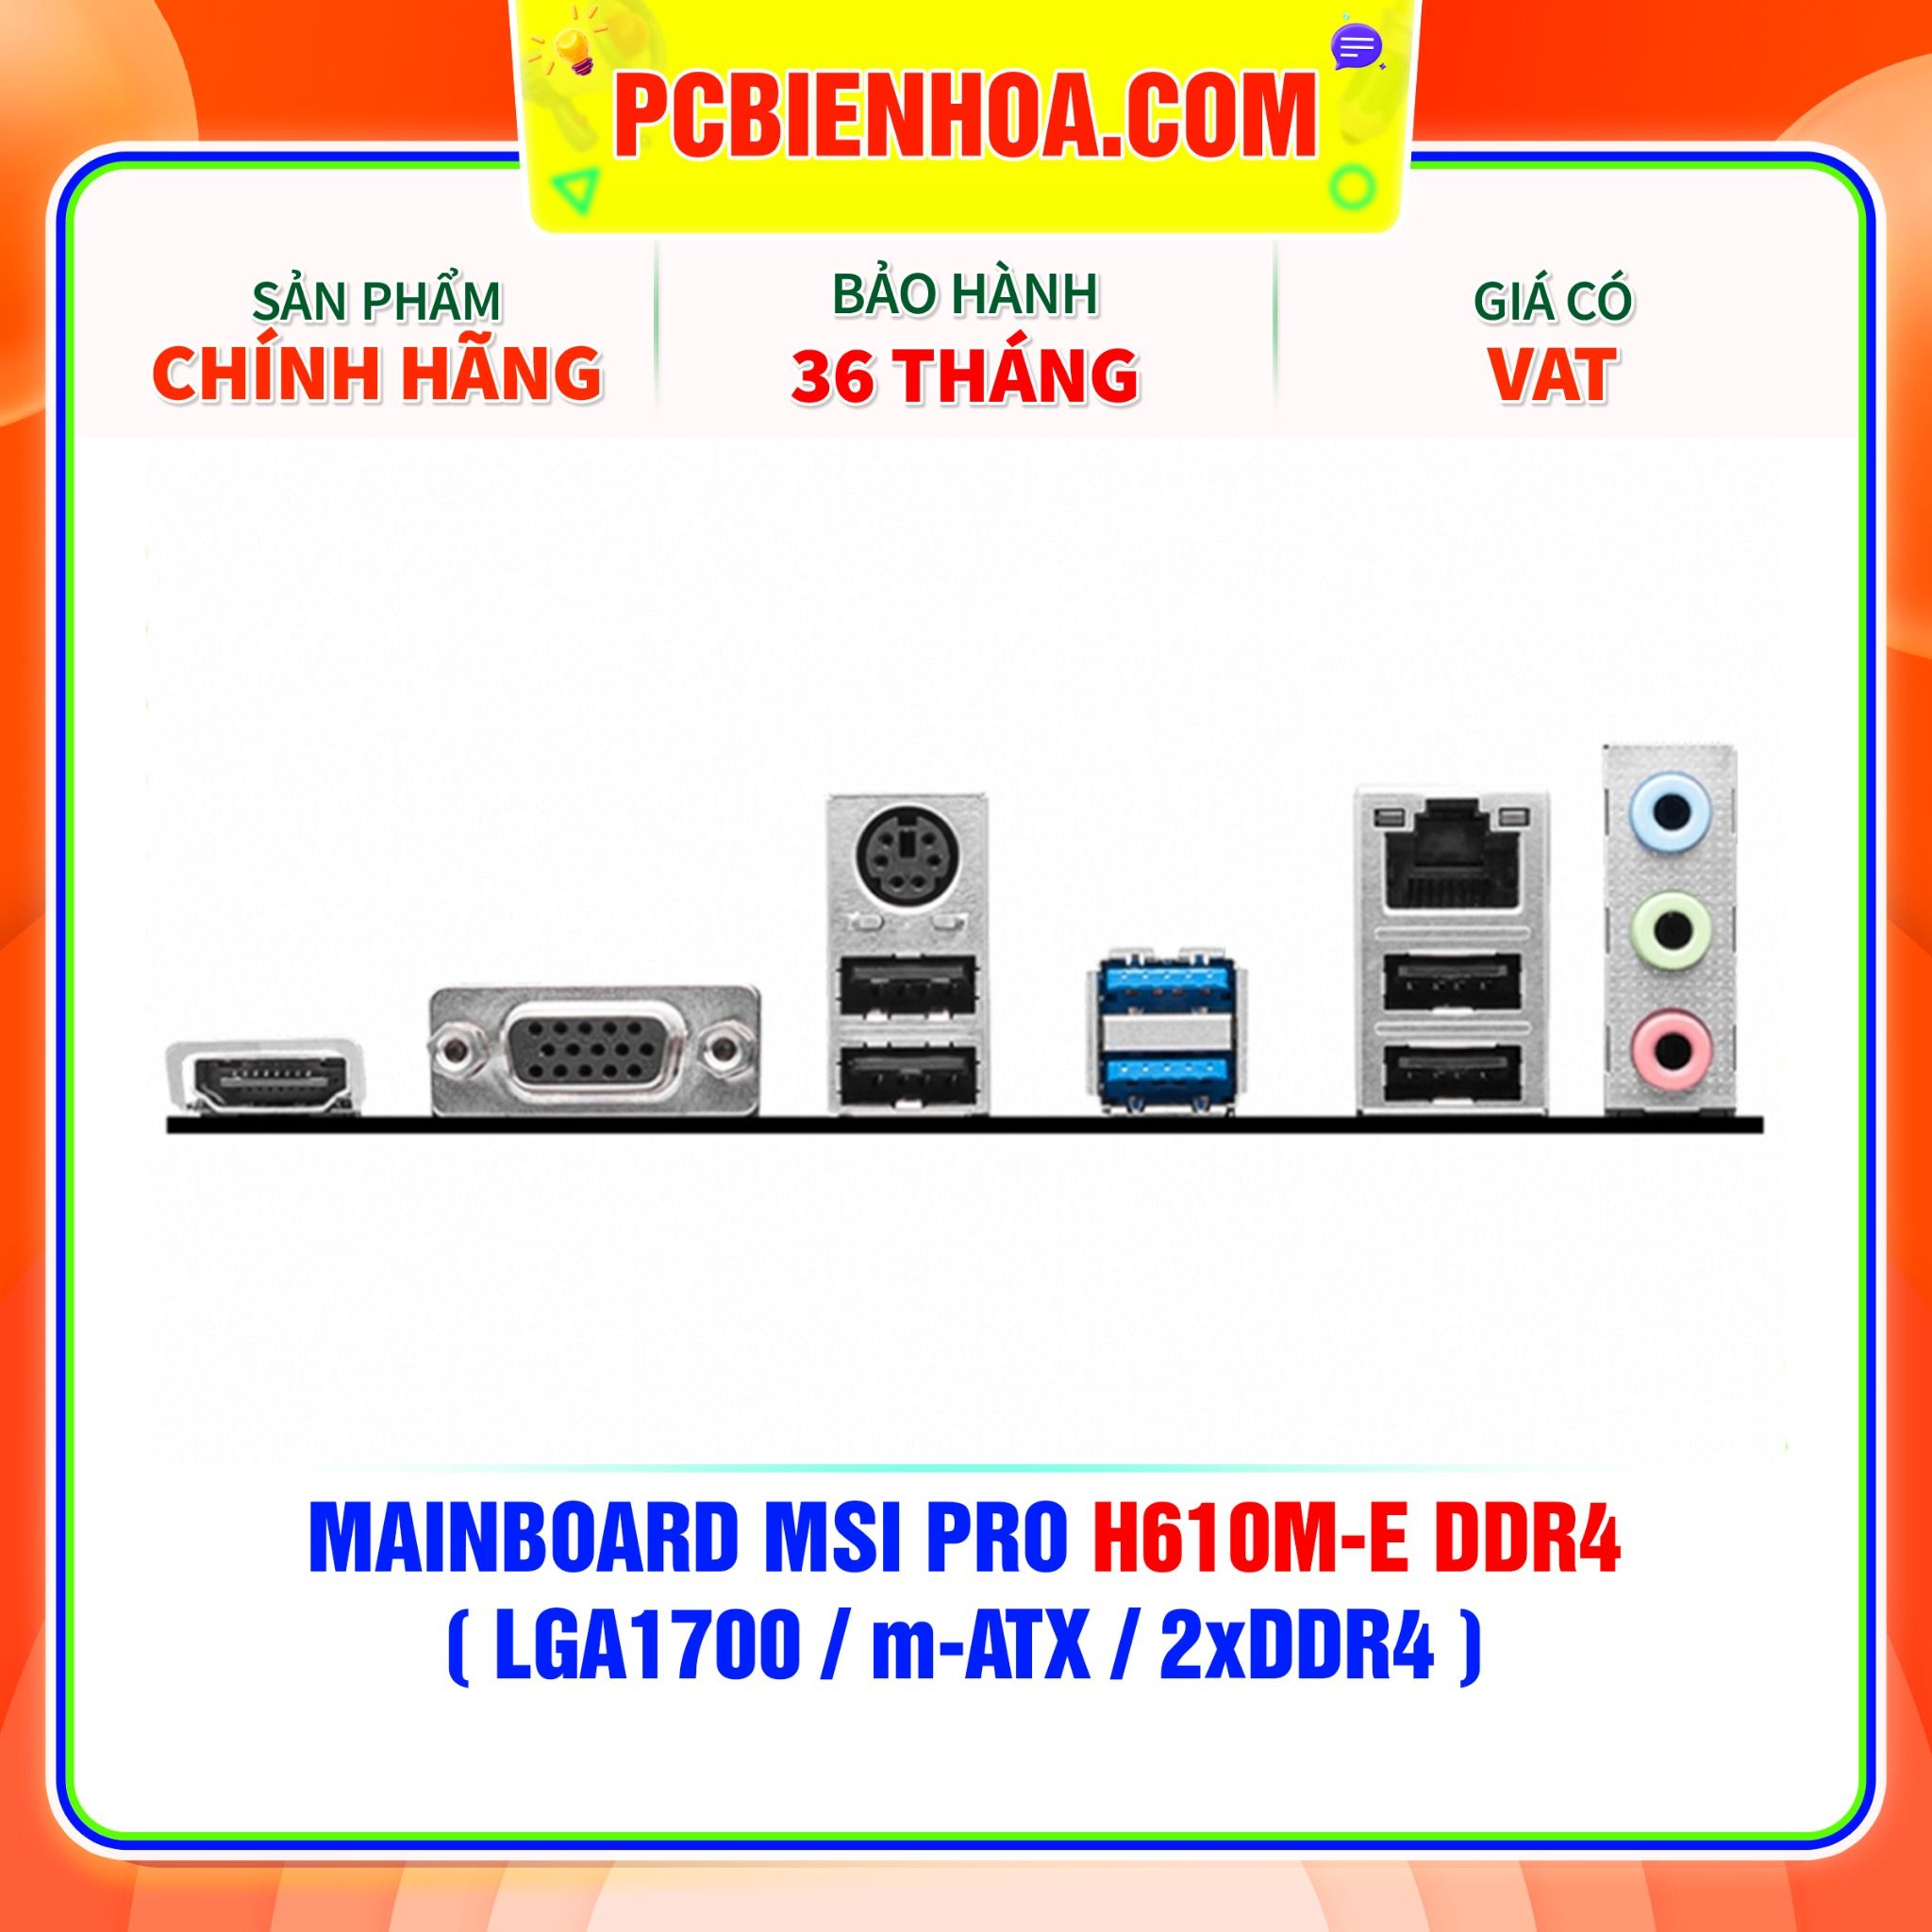  MAINBOARD MSI PRO H610M-E DDR4 ( LGA1700 / m-ATX / 2xDDR4 ) 